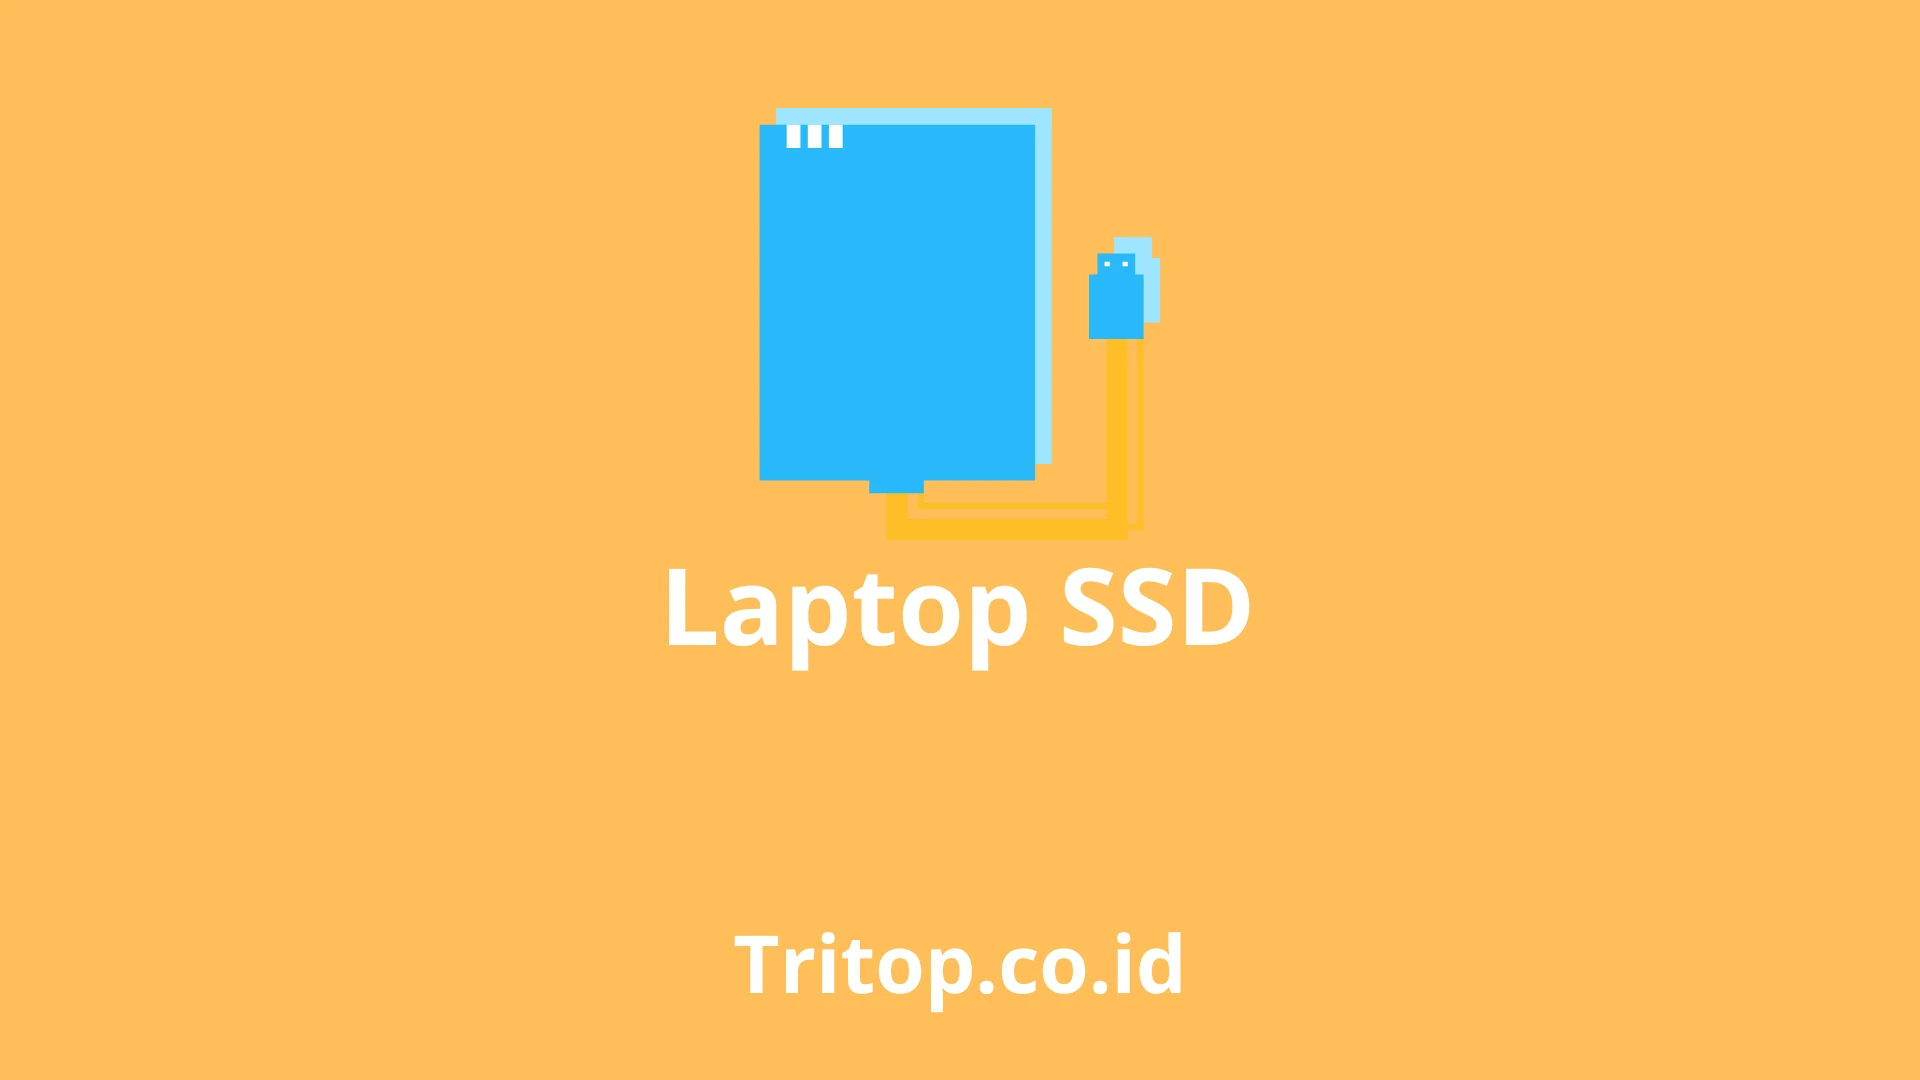 Laptop SSD tritop.co.id